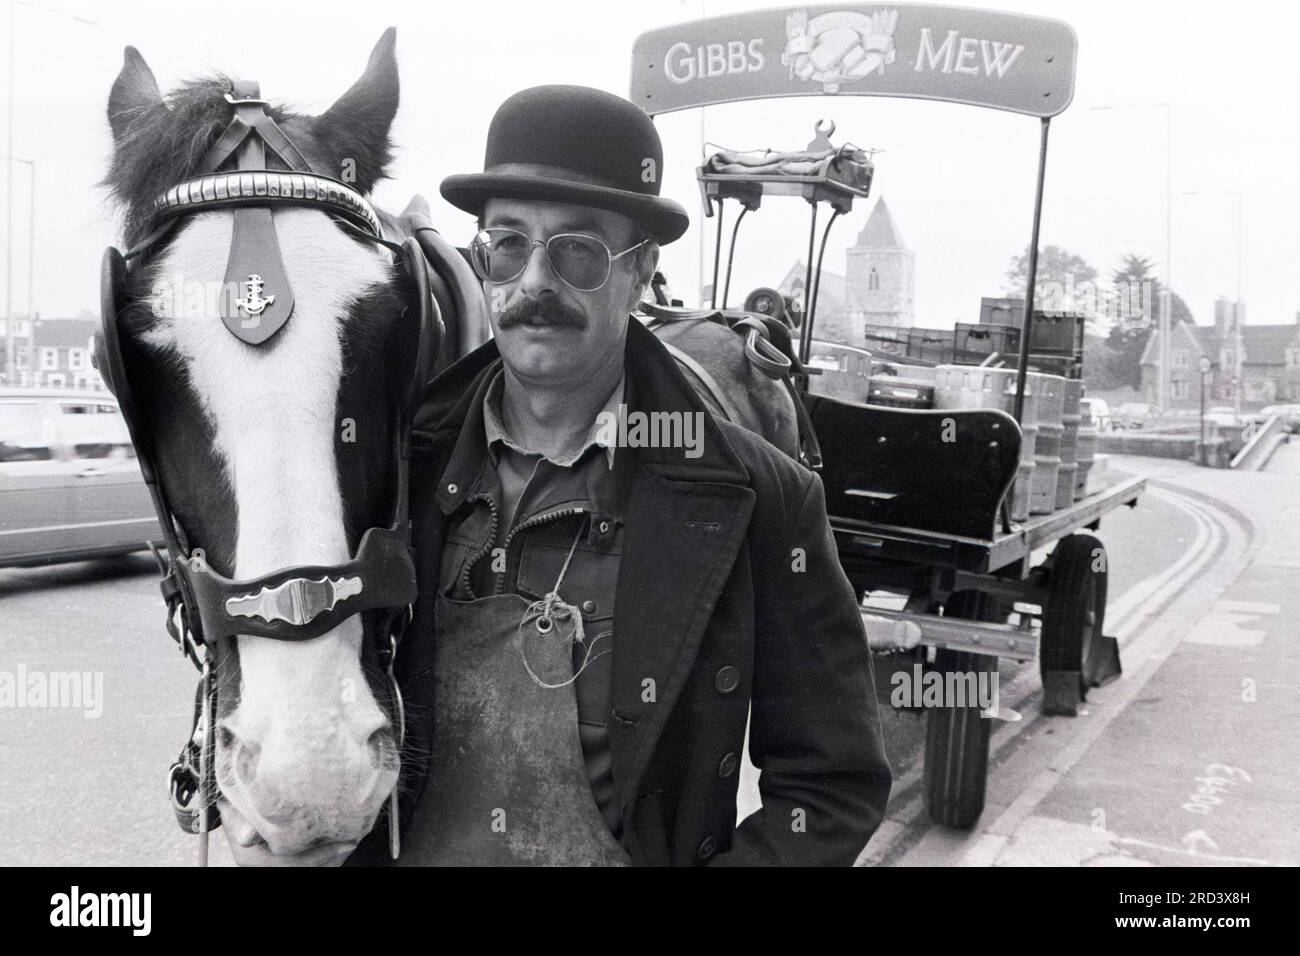 Warrior le cheval dray pour la brasserie de Salisbury Gibbs Mew fait une pause lors de sa tournée de livraison en 1990. Banque D'Images